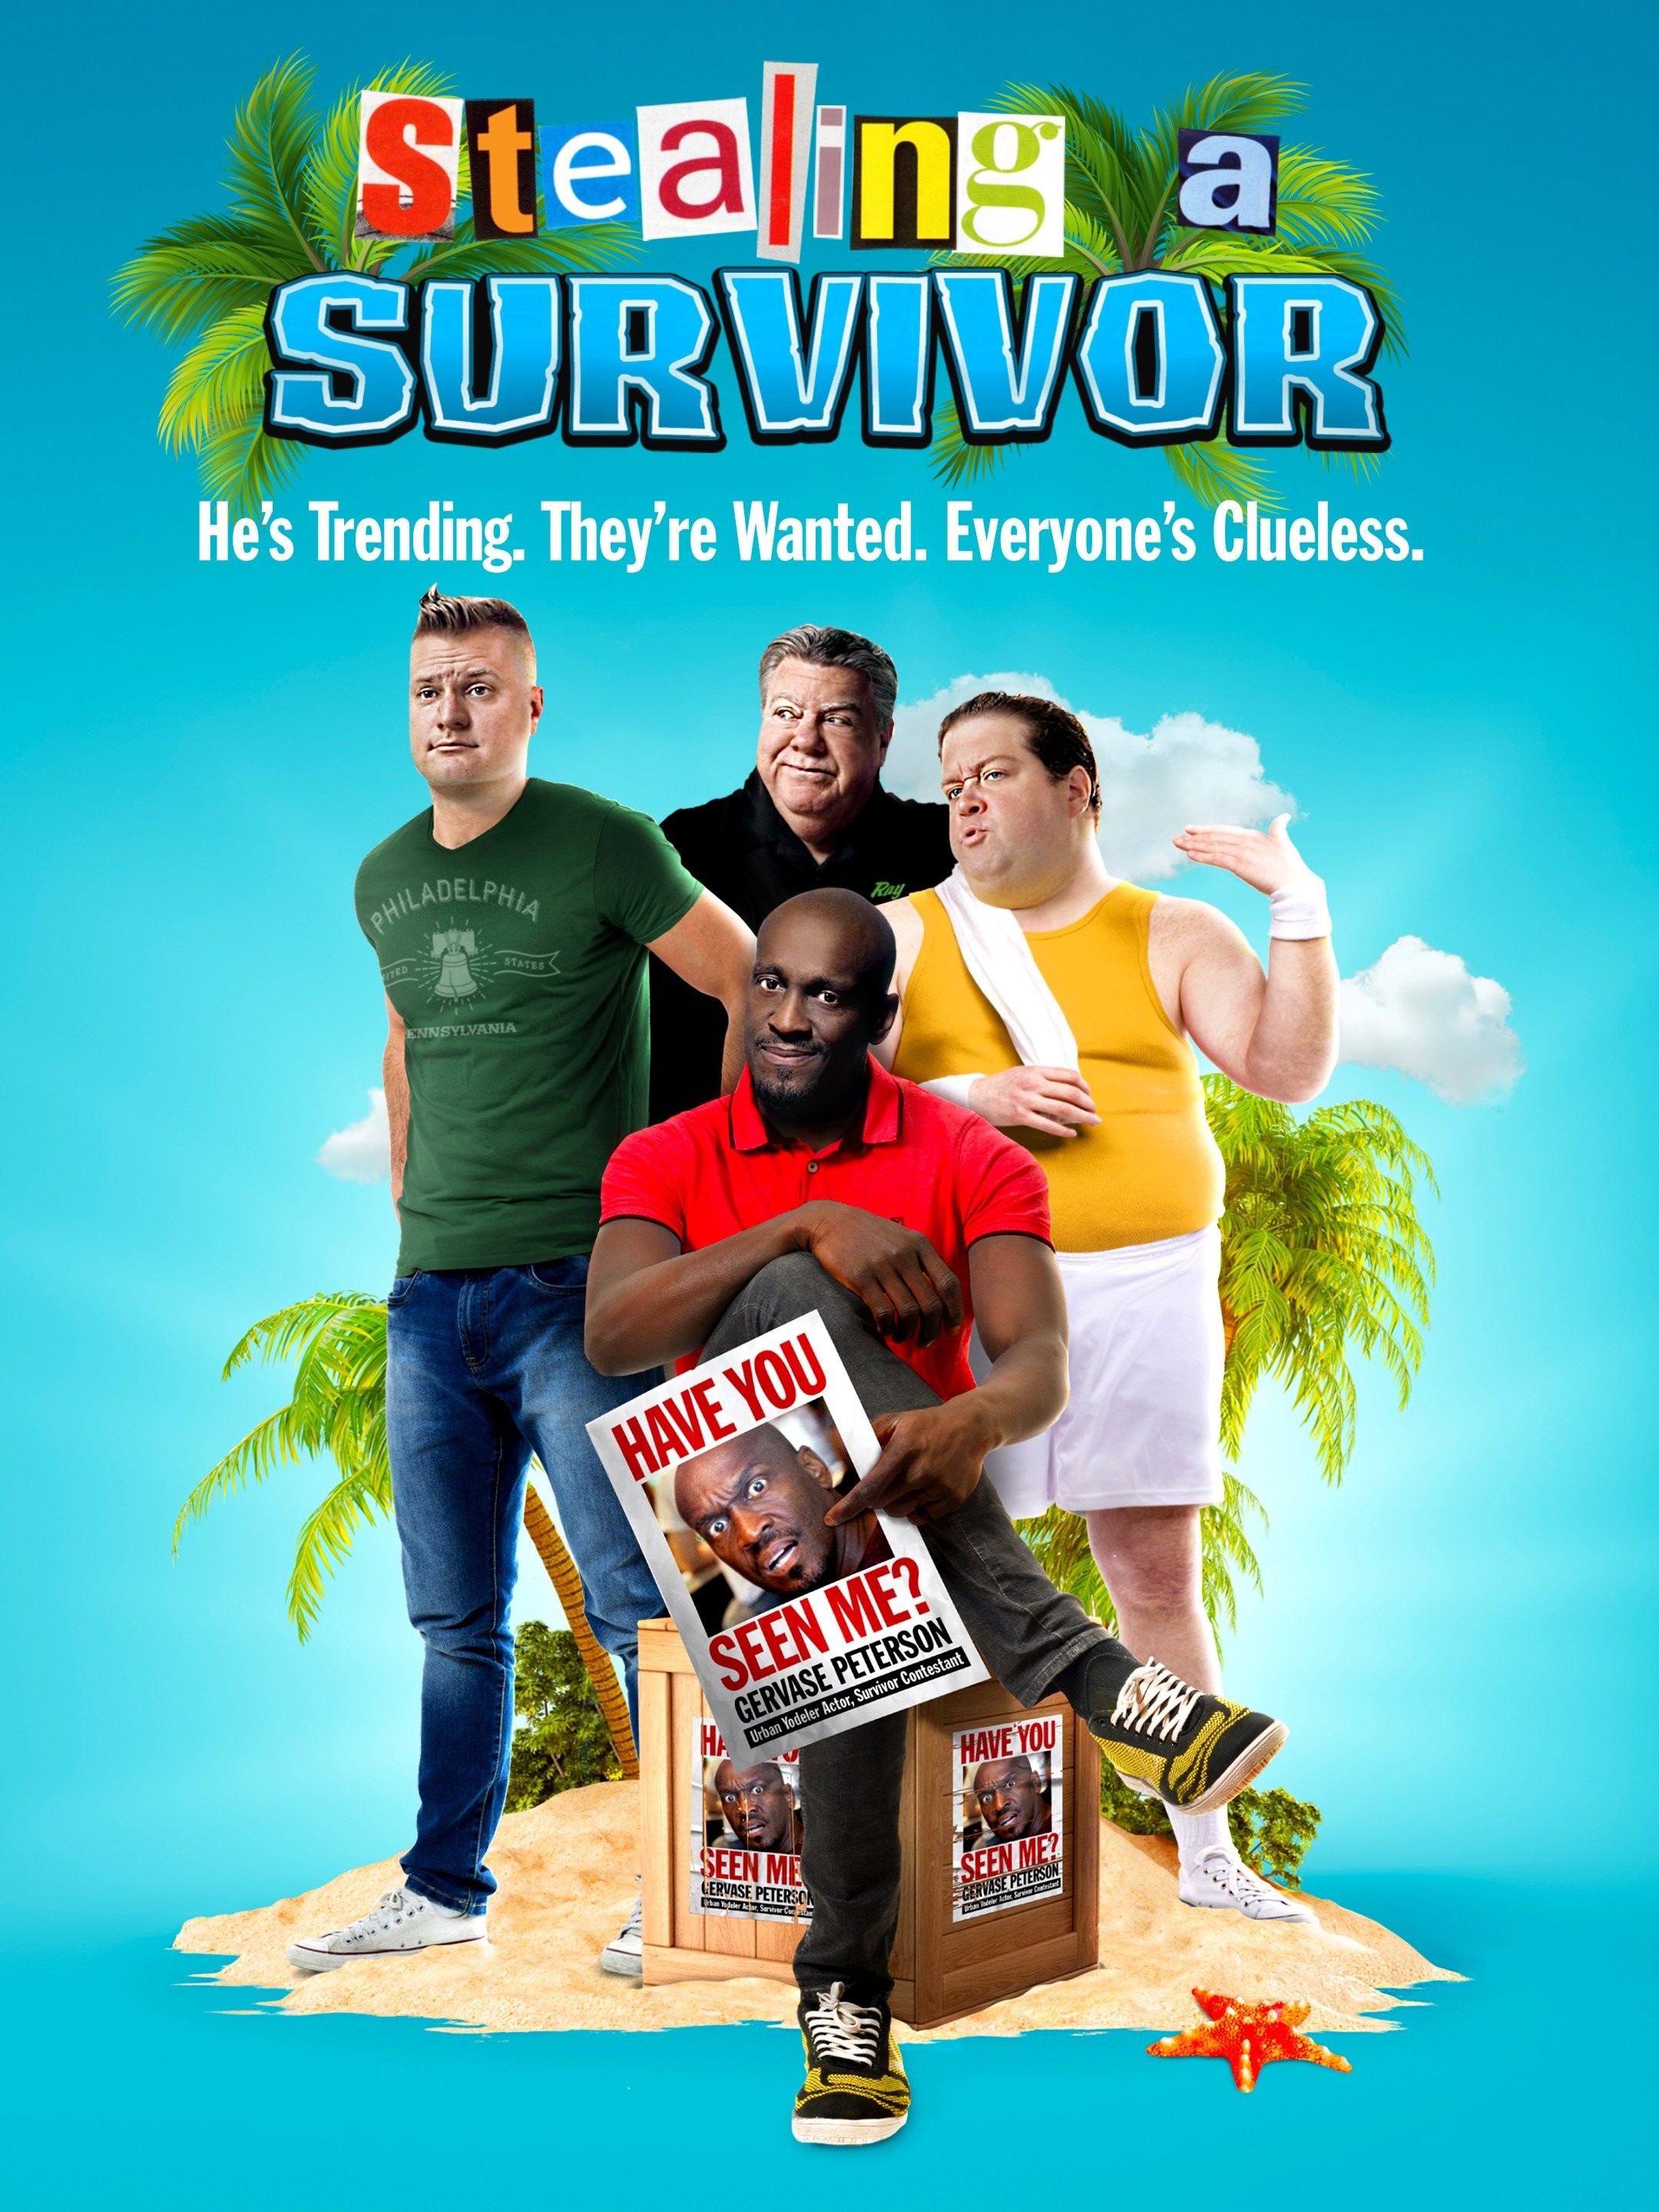 Survivor - Rotten Tomatoes